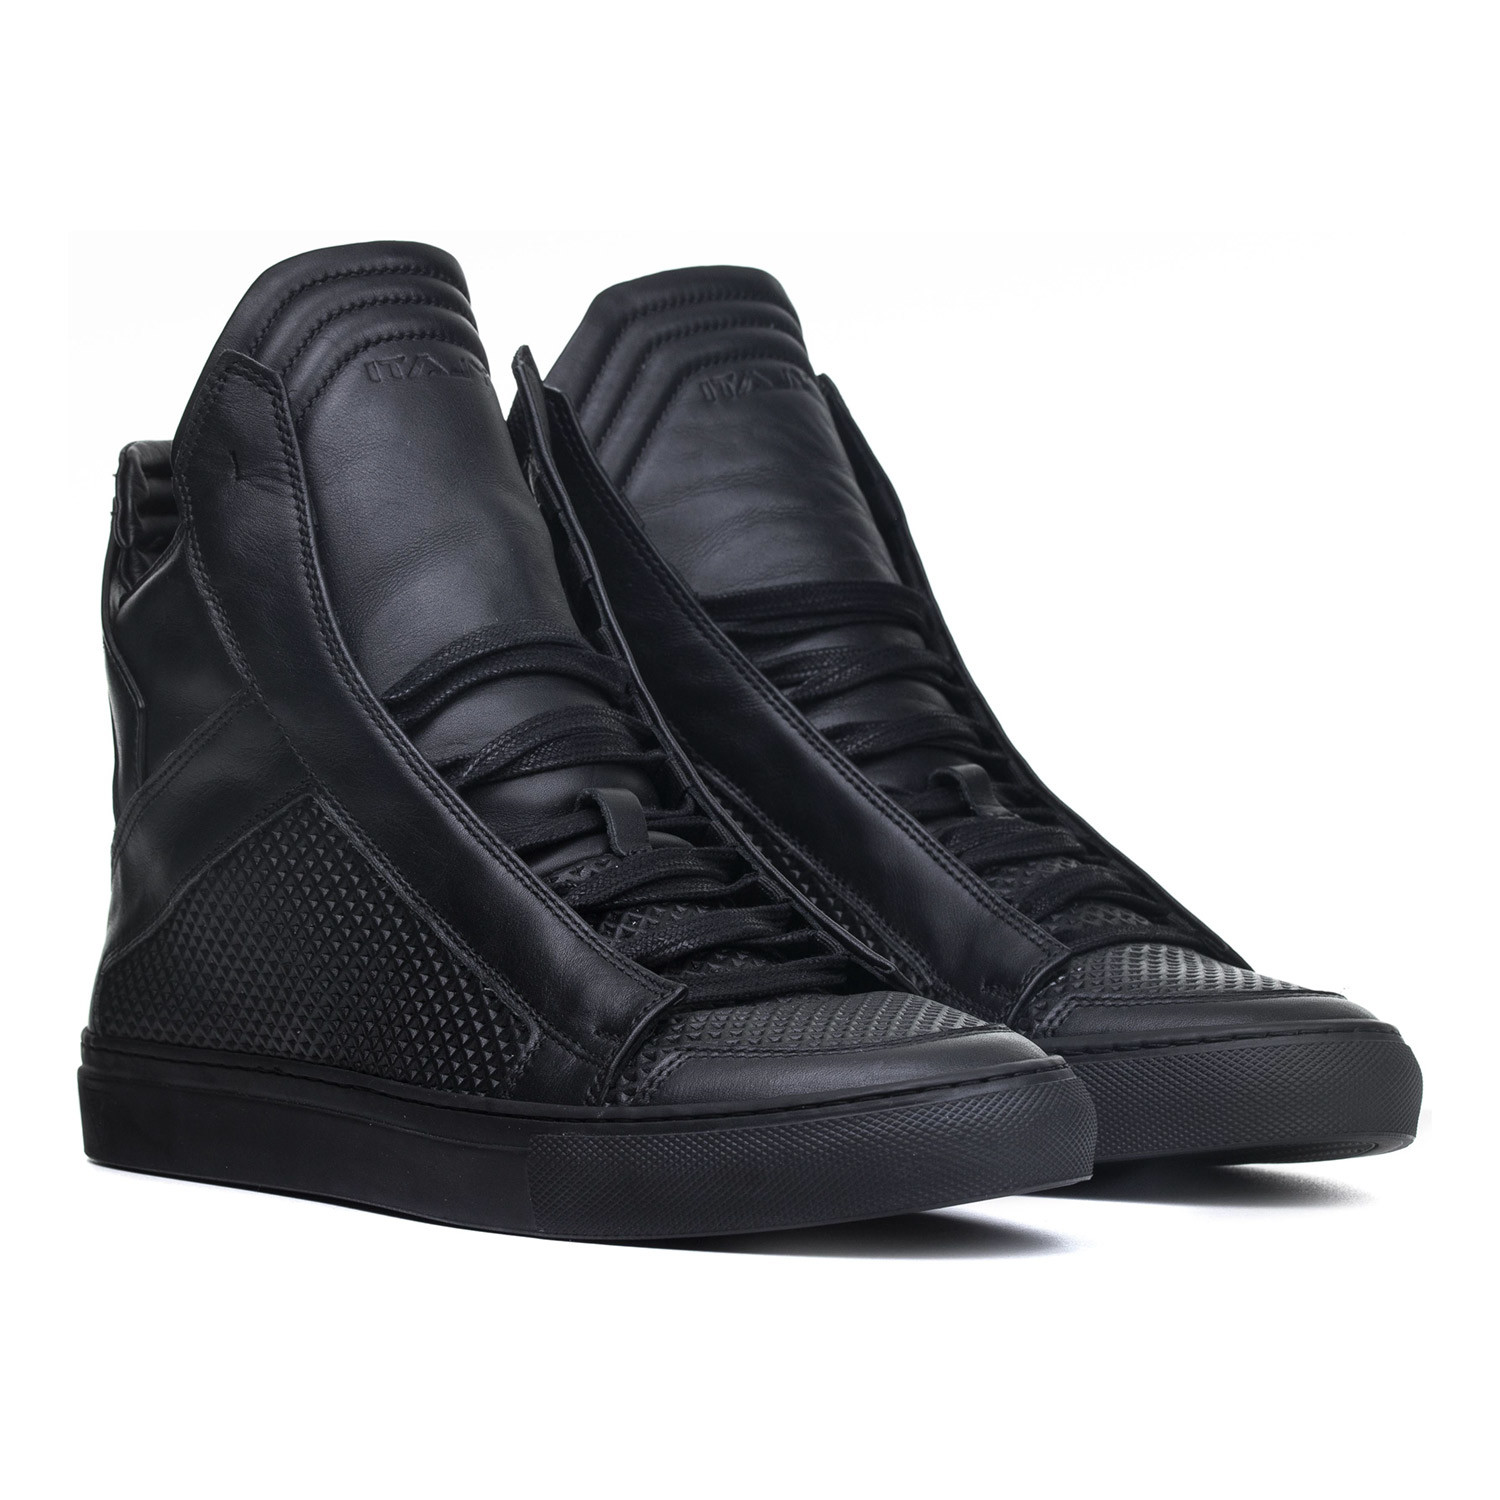 YLATI // Zeus High-Top Sneaker // Black (Euro: 46) - YLATI Footwear ...